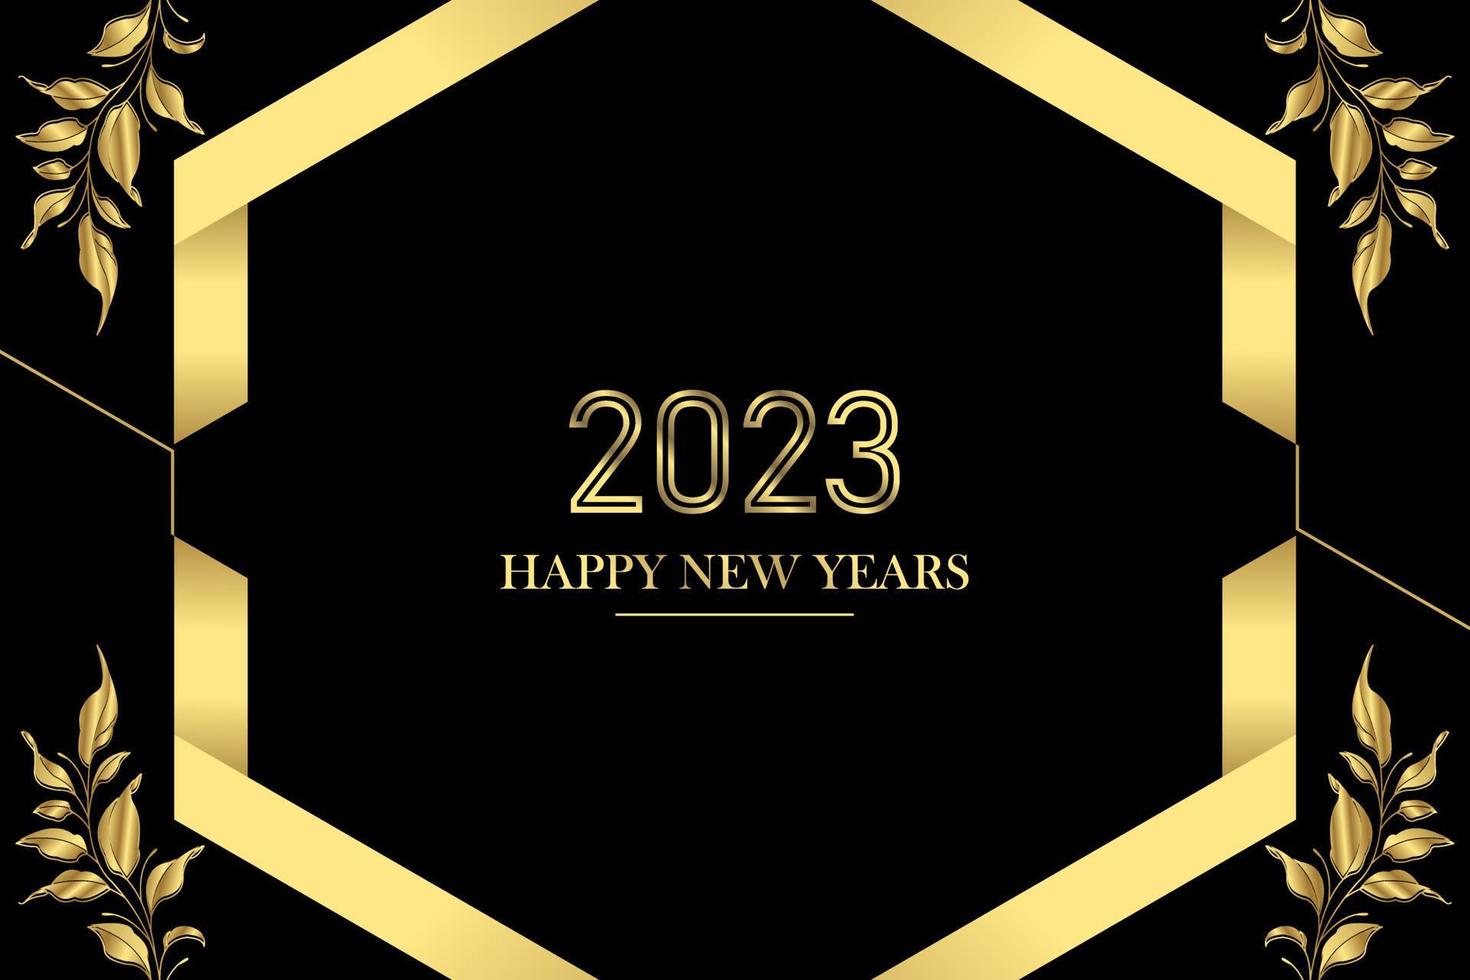 2023 feliz ano novo com design de fundo floral. cartão de felicitações, banner, pôster. ilustração vetorial. vetor